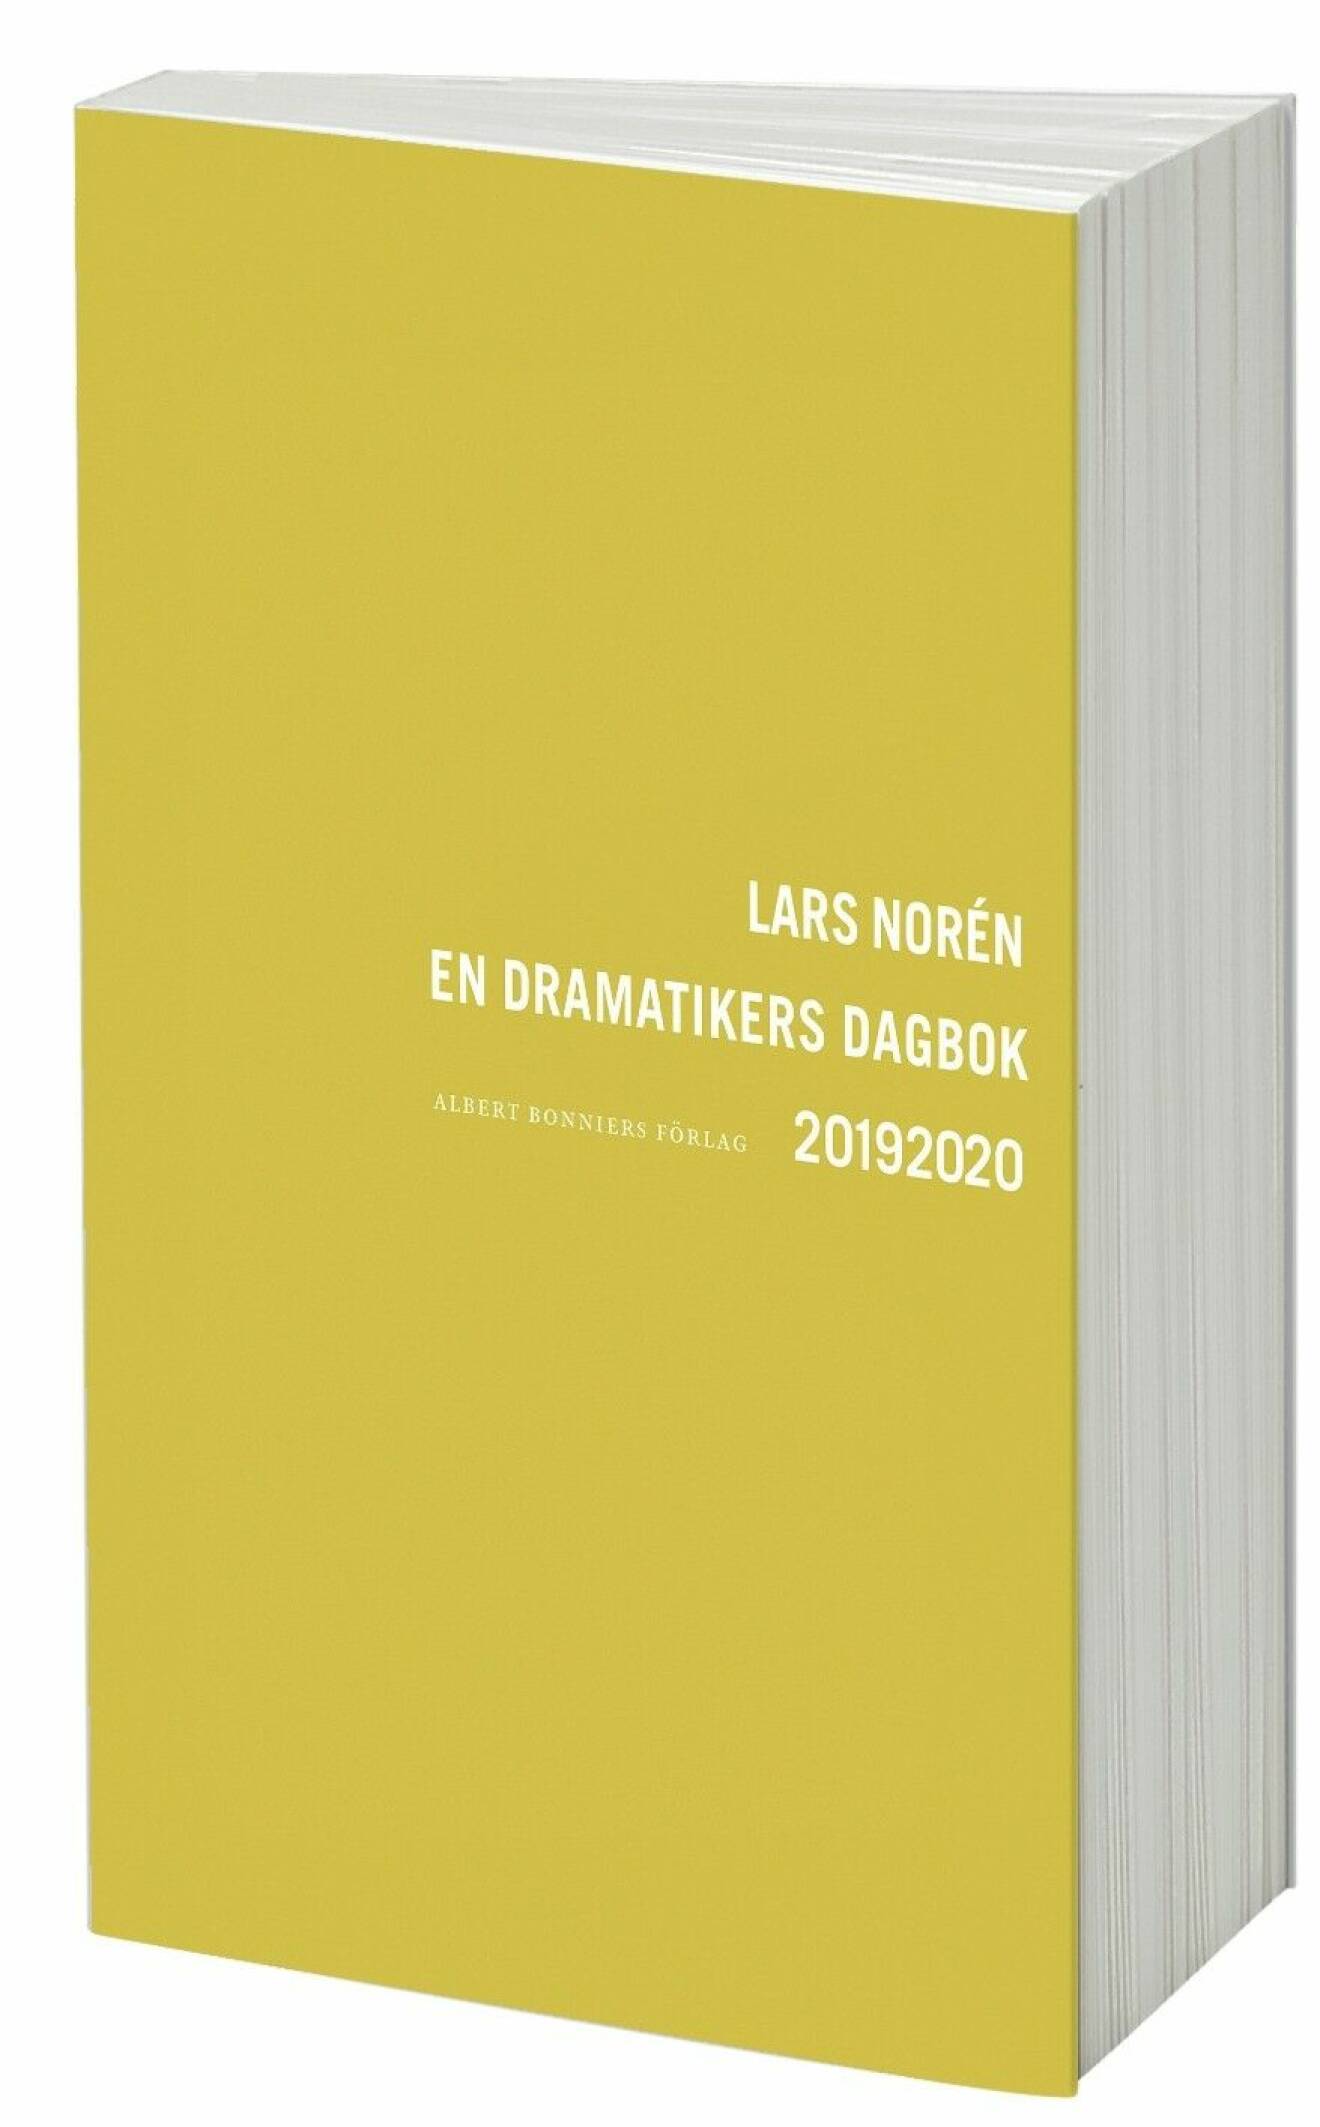 En dramatikers dagbok 20192020 av Lars Norén.